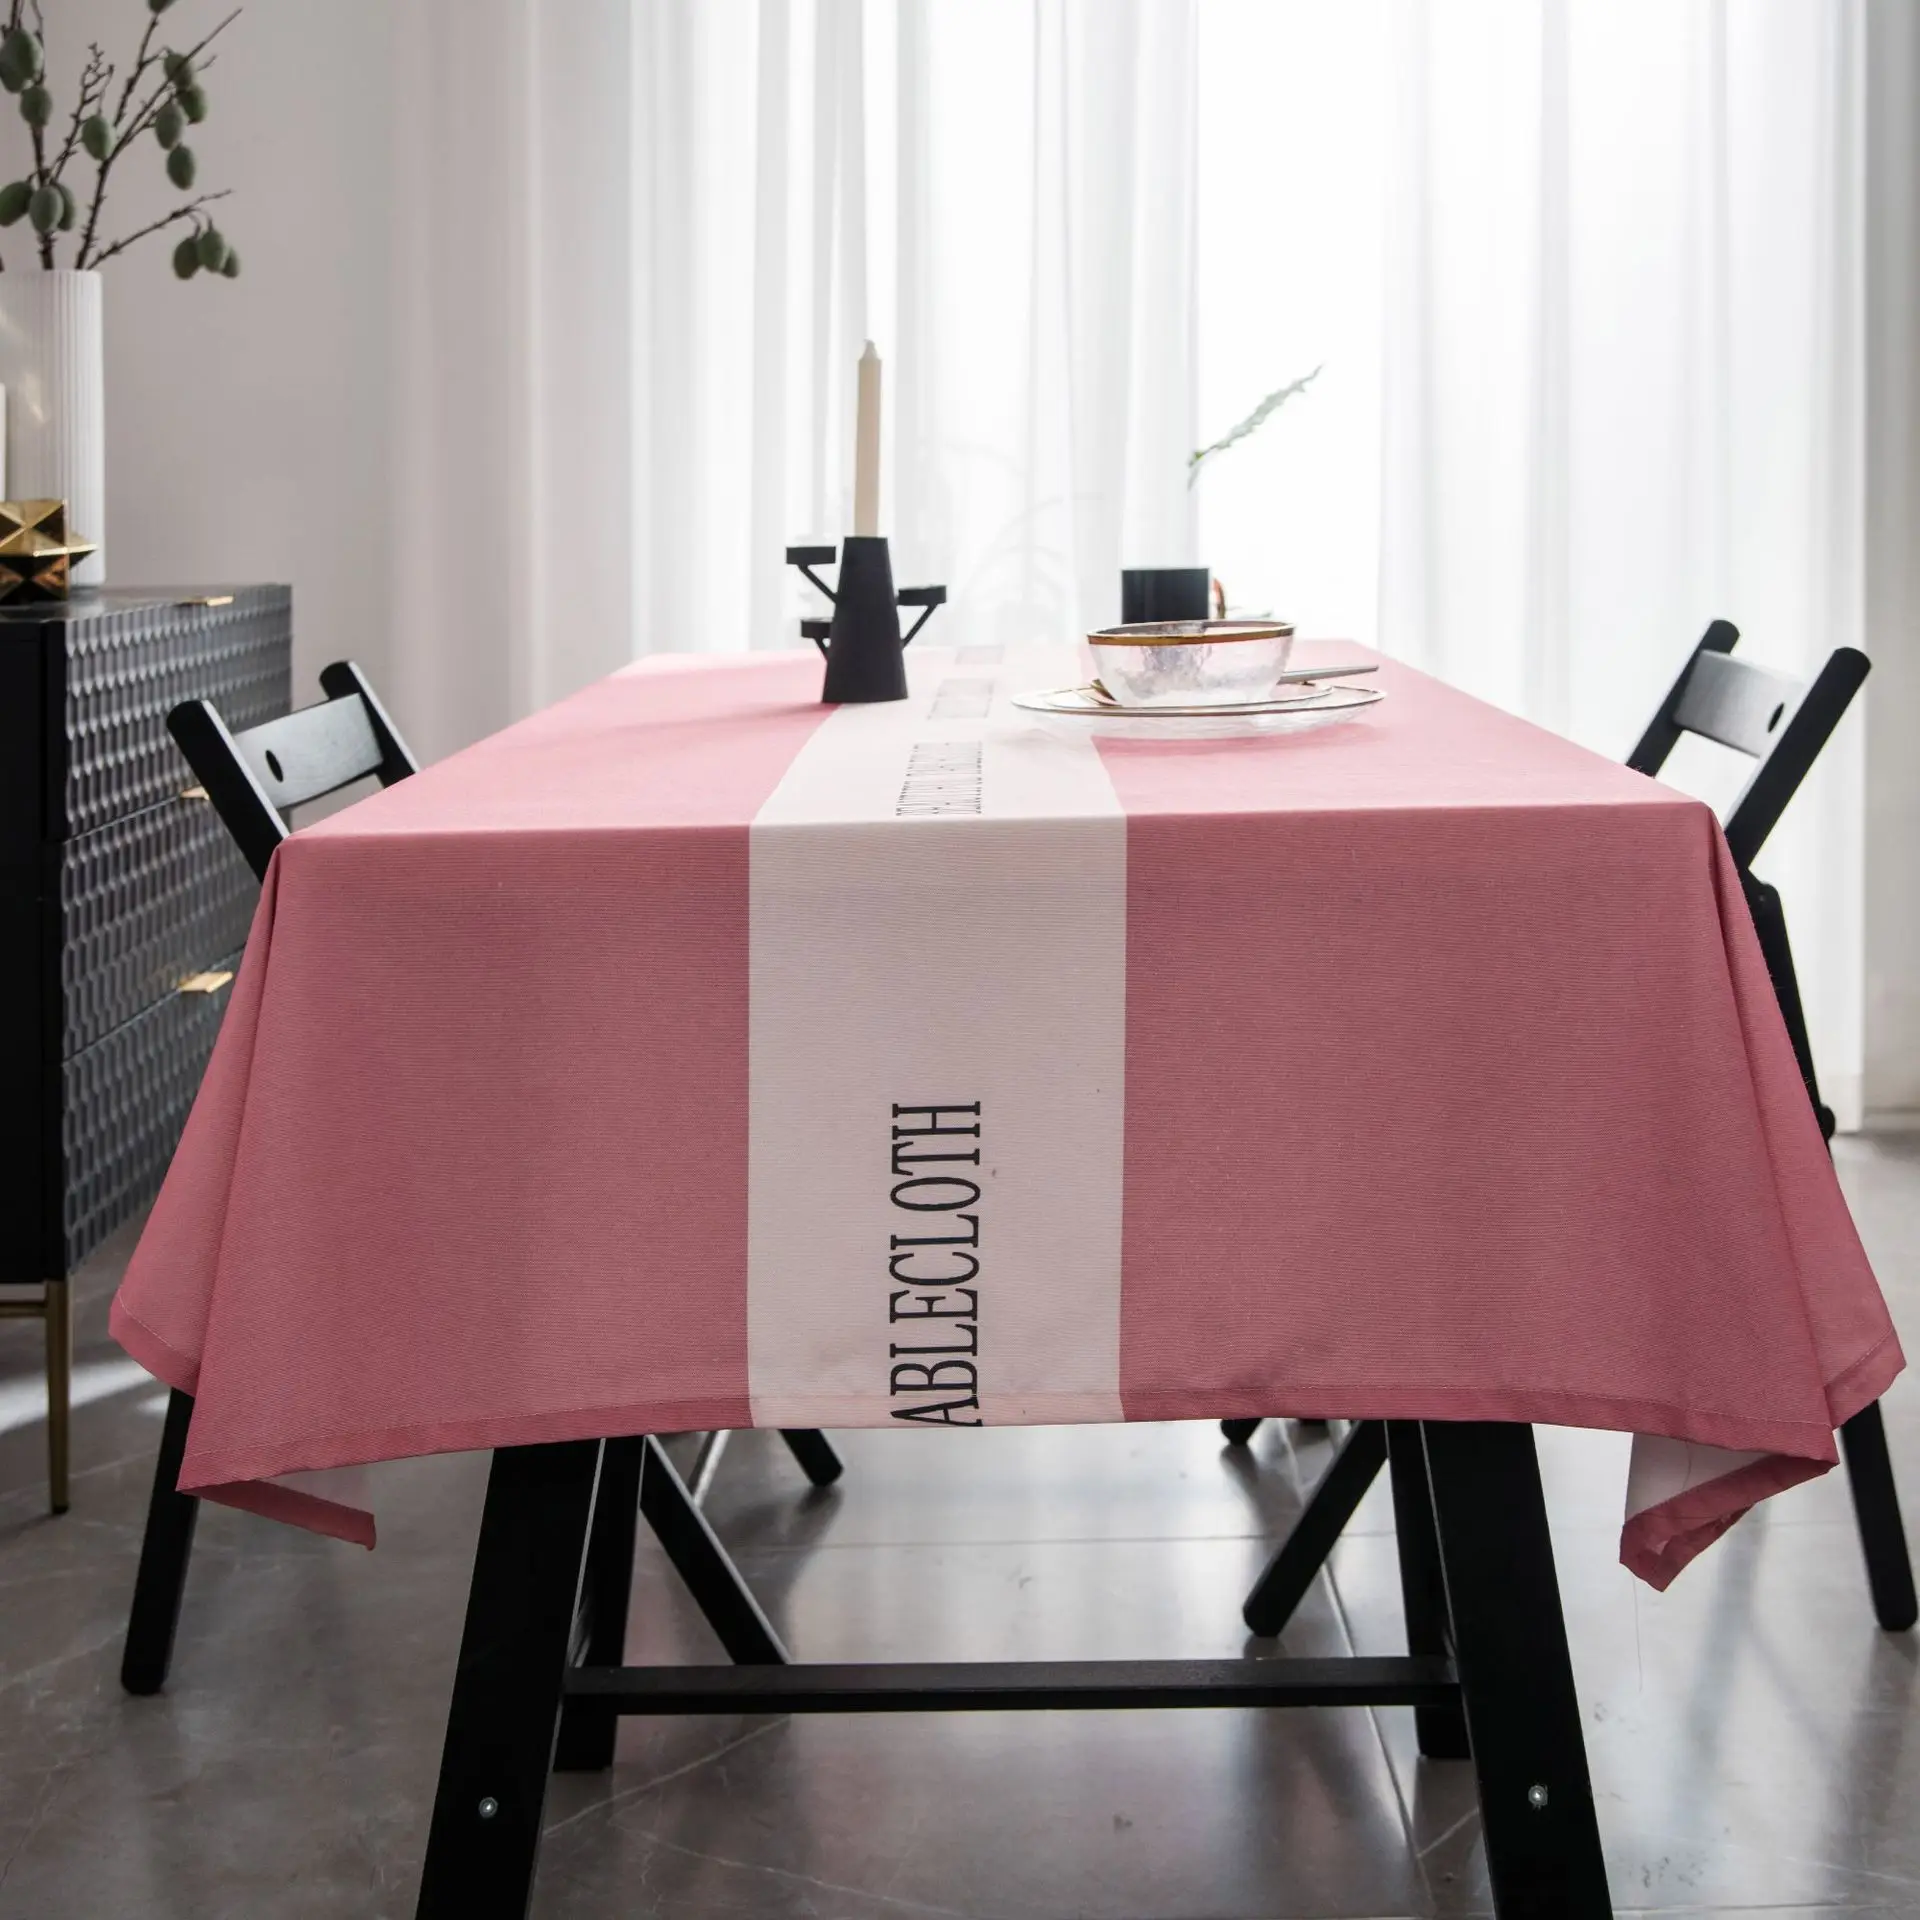 Скандинавские рождественские скатерти длинные Водонепроницаемые скатерти круглый прямоугольный журнальный столик серый обеденный стол toalha de mesa